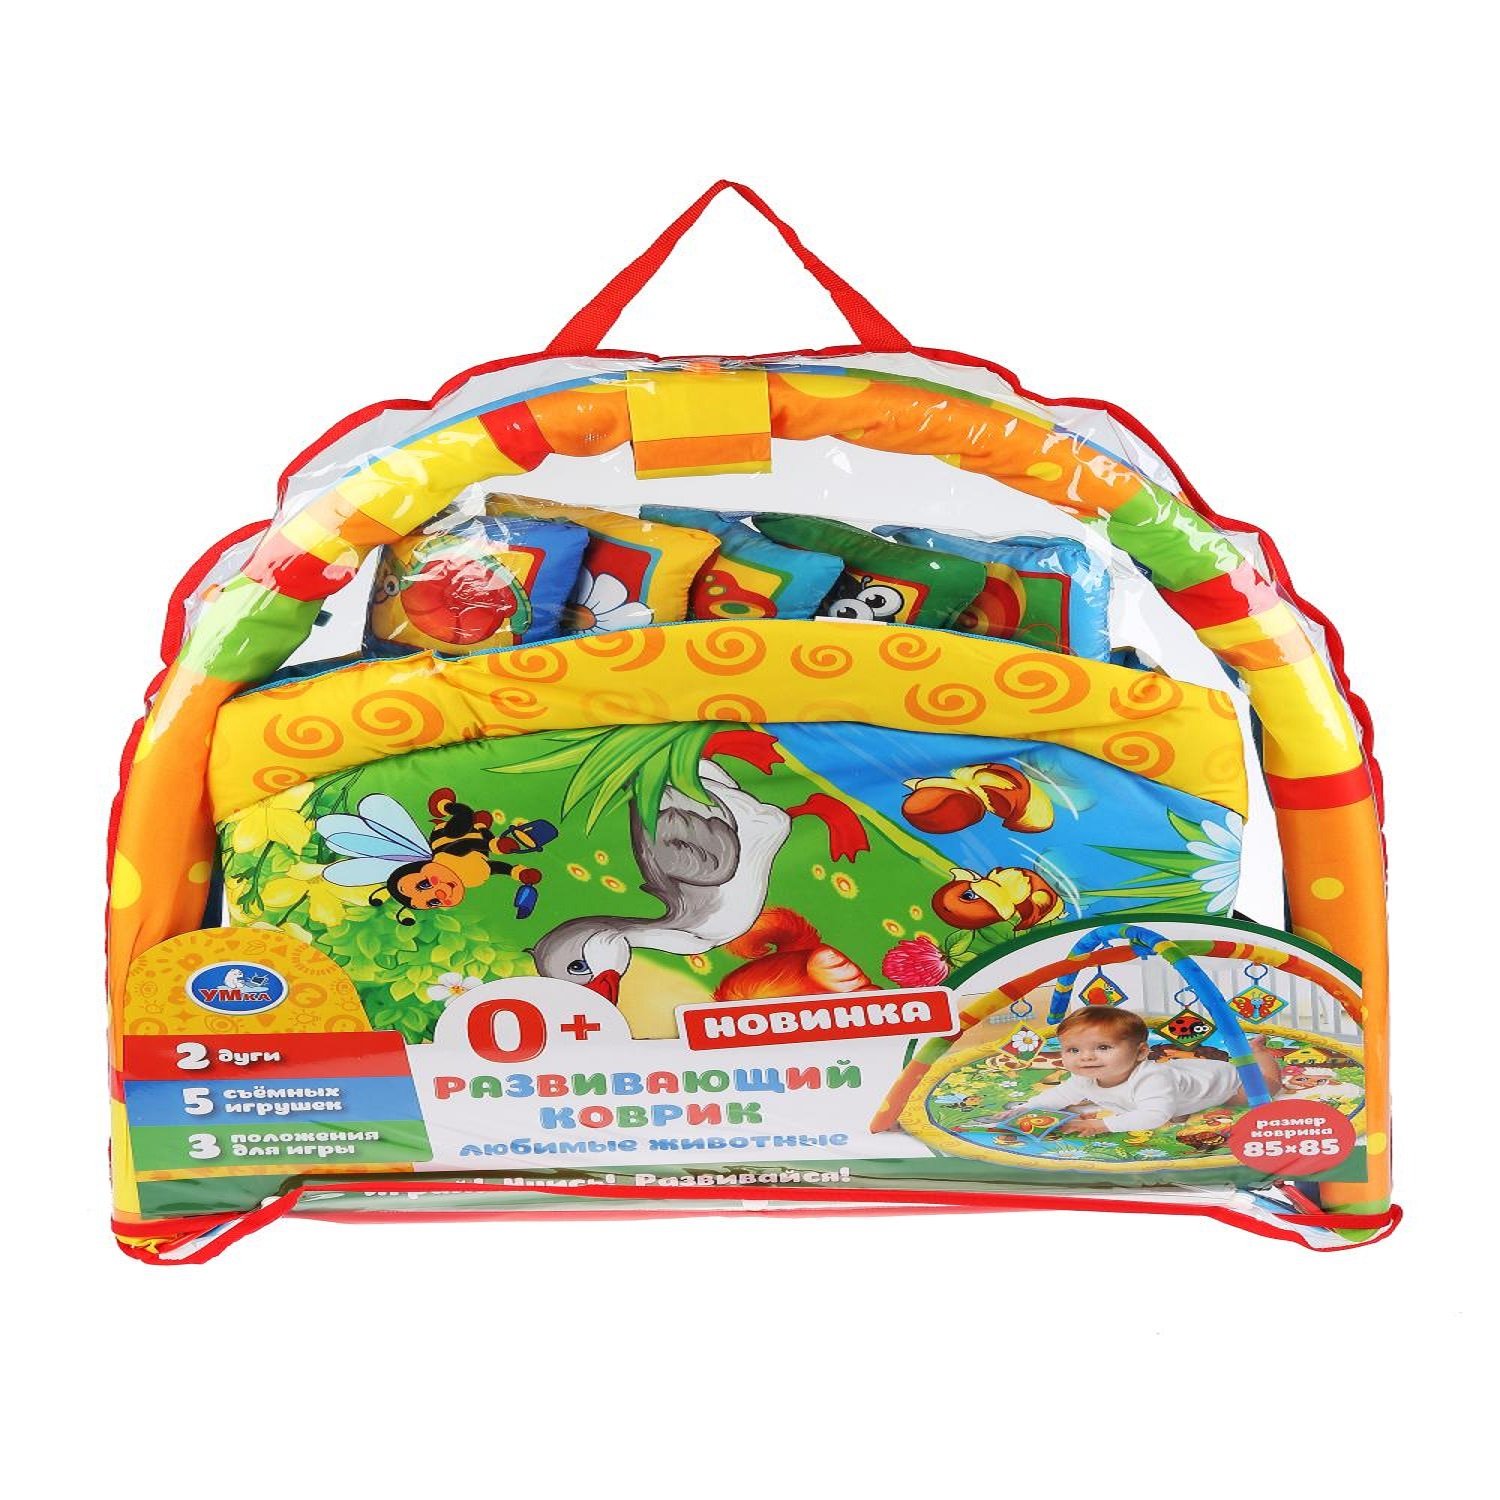 Игровой коврик Умка Домашние животные с мягкими игрушками на подвеске в пакете 277037